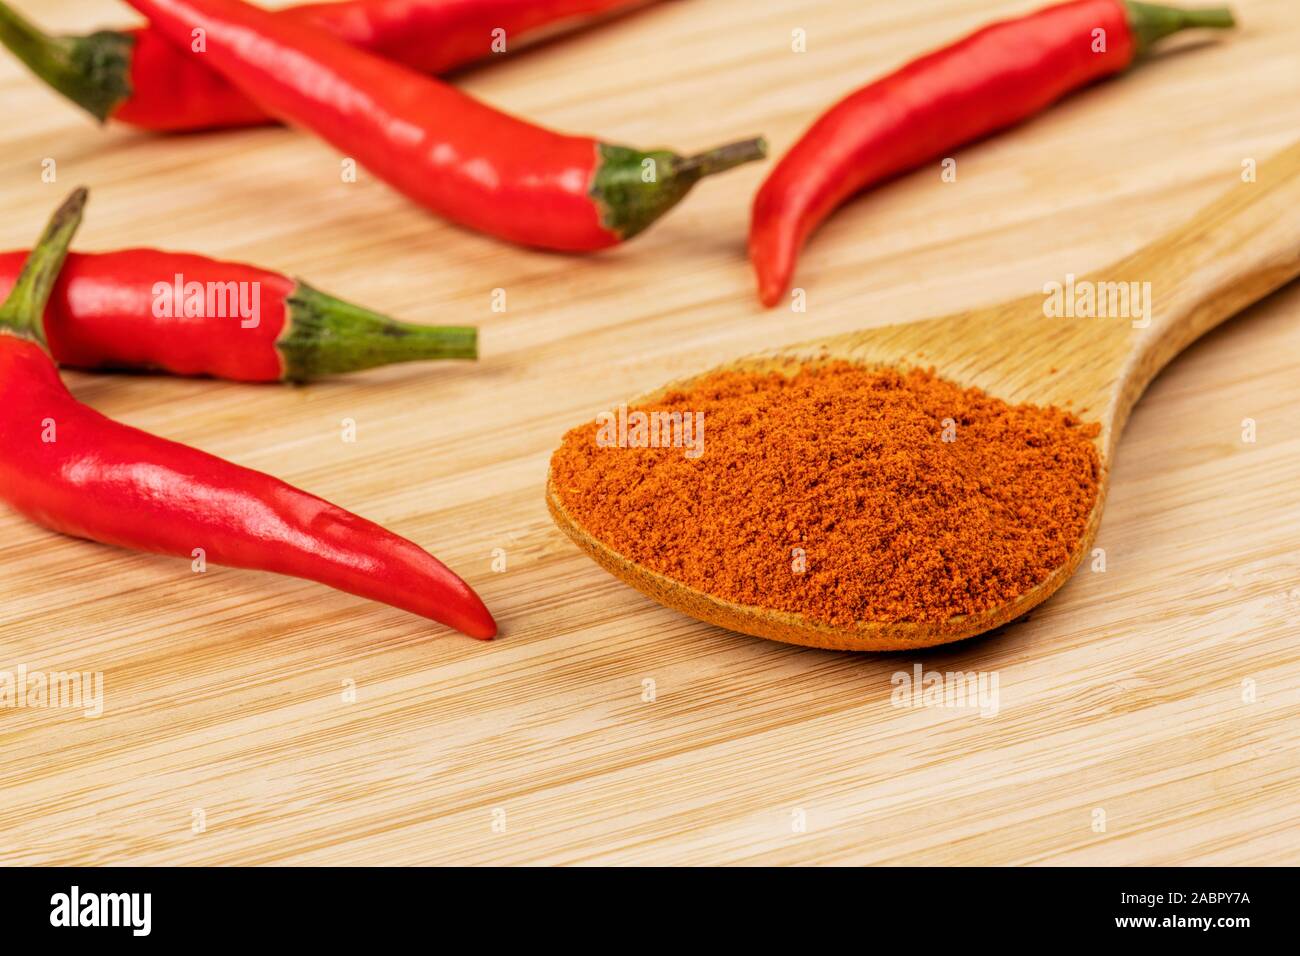 Holzlöffel voller Chili Pulver auf einem hölzernen Hintergrund Stockfoto